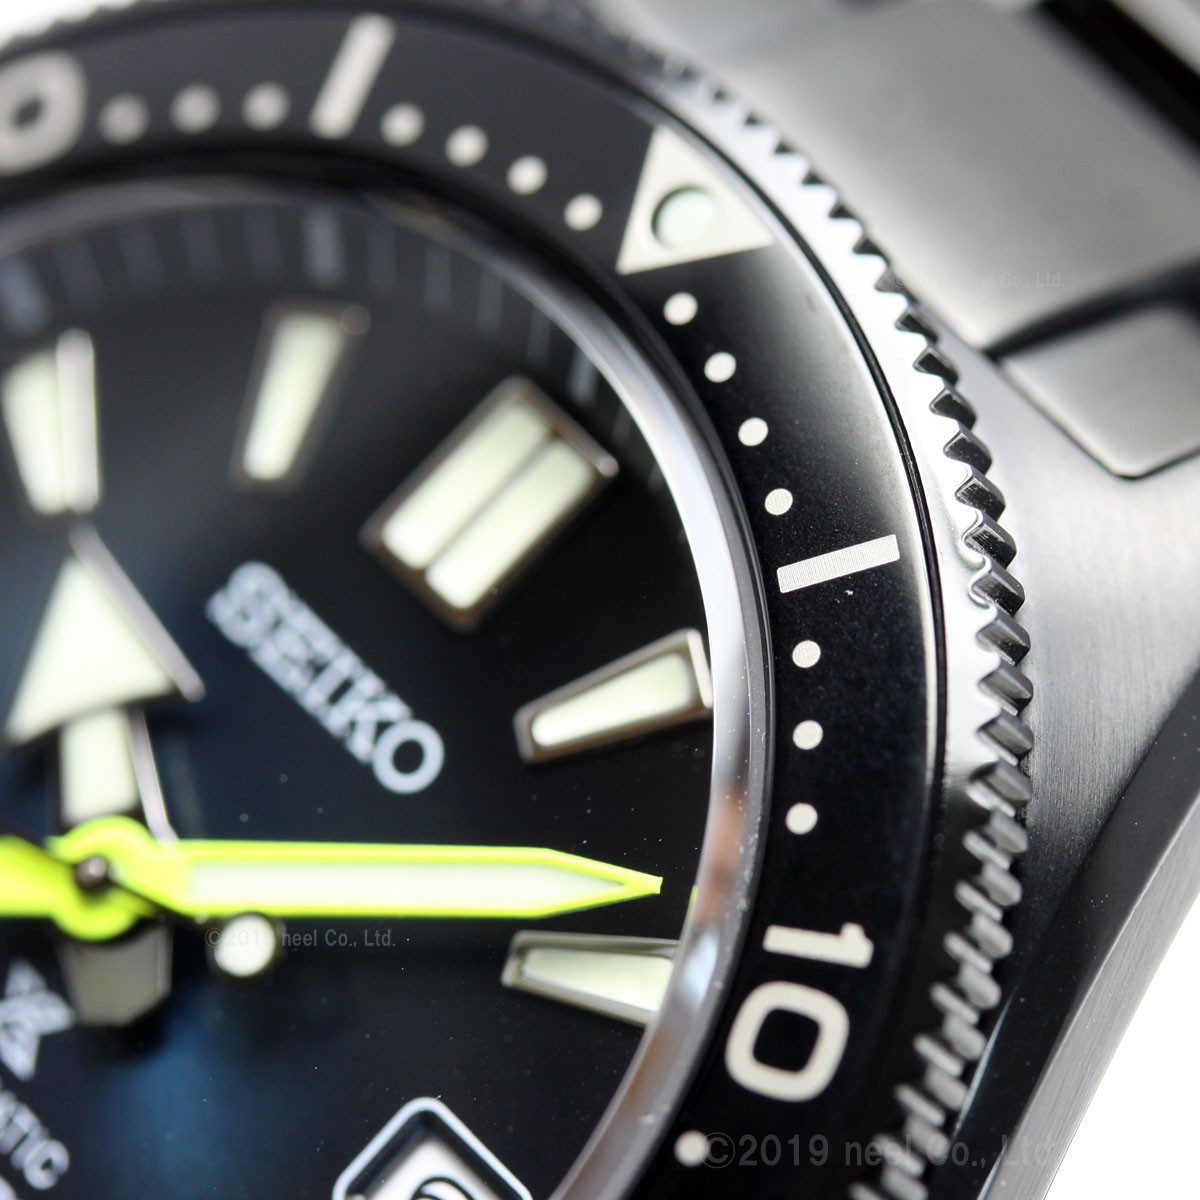 セイコー プロスペックス 限定モデル ダイバー メカニカル 自動巻き 腕時計 メンズ SBDC085